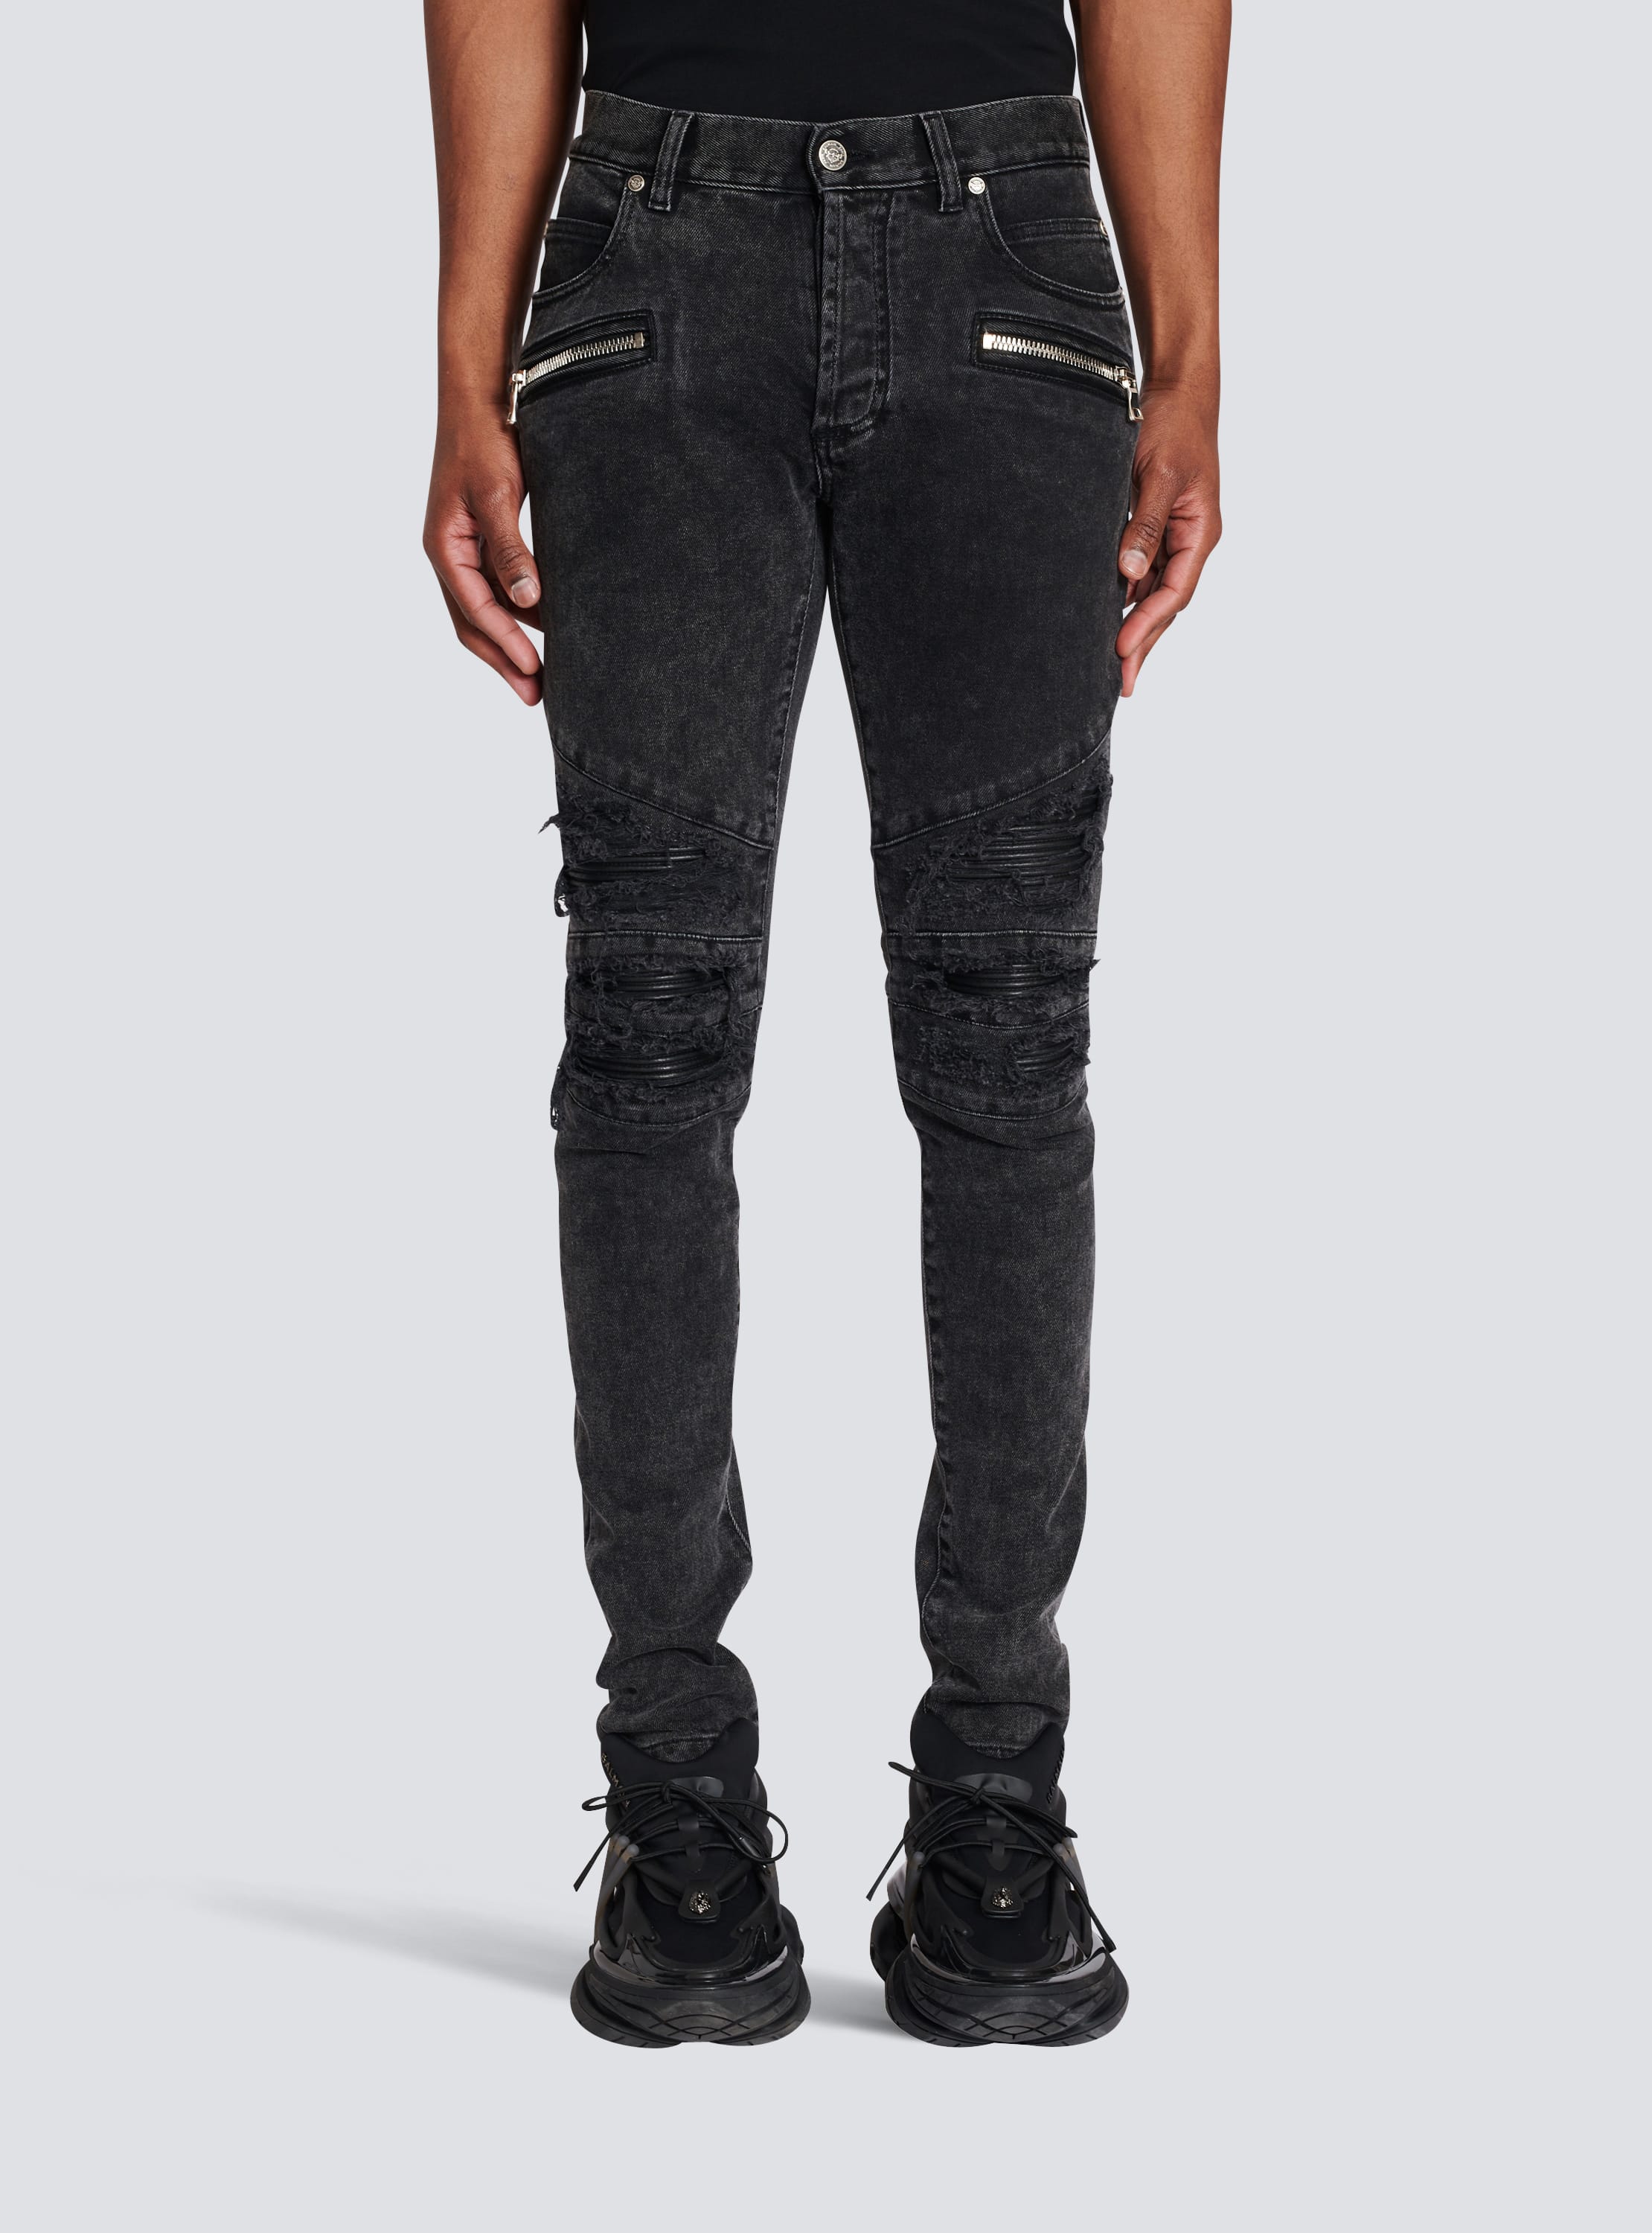 gennemførlig scramble At interagere Faded faux leather slim jeans black - Men | BALMAIN